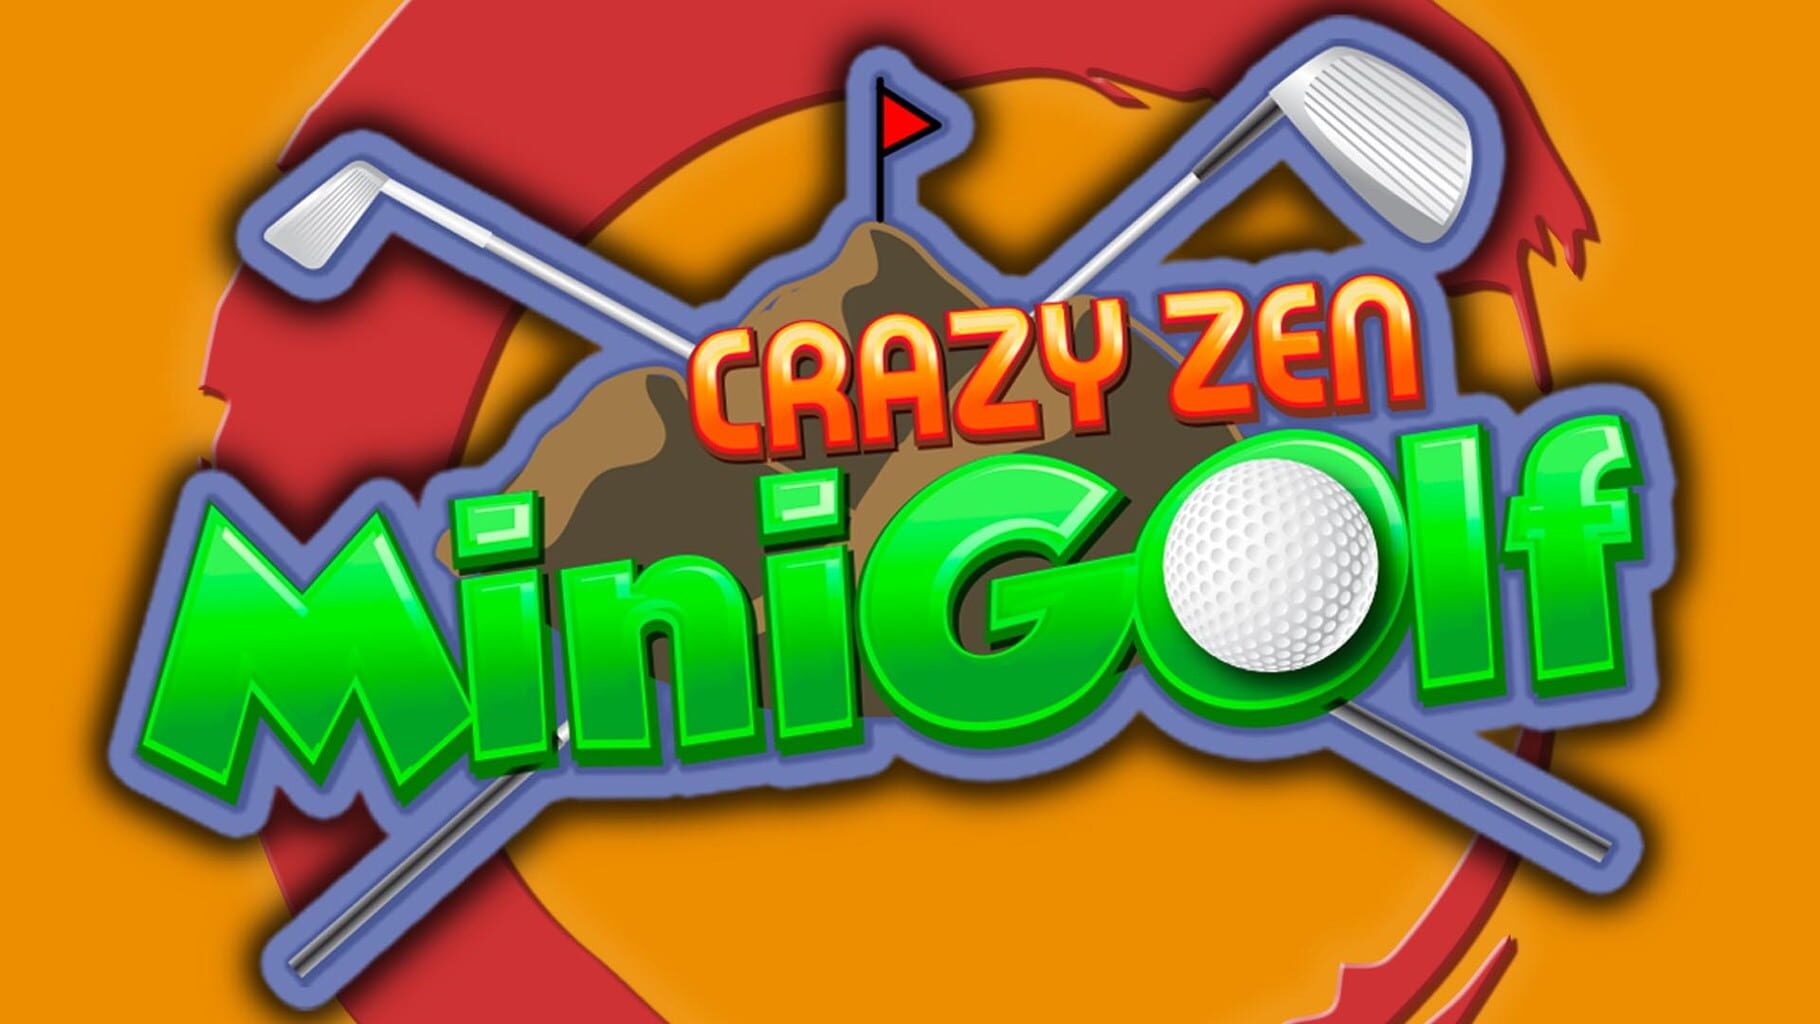 Arte - Crazy Zen Mini Golf